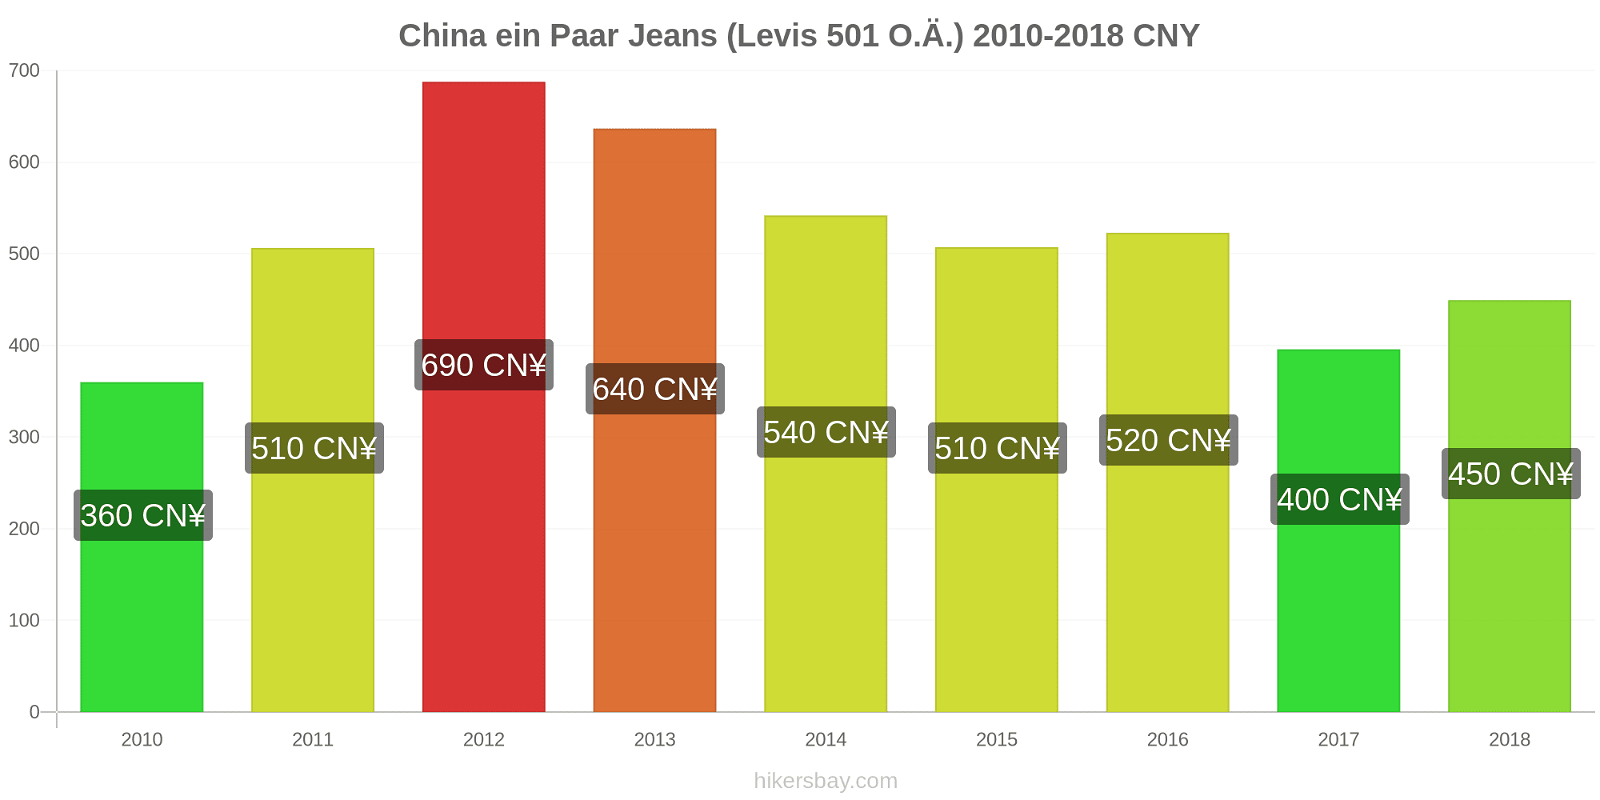 China Preisänderungen 1 Paar Jeans (Levis 501 oder ähnlich) hikersbay.com